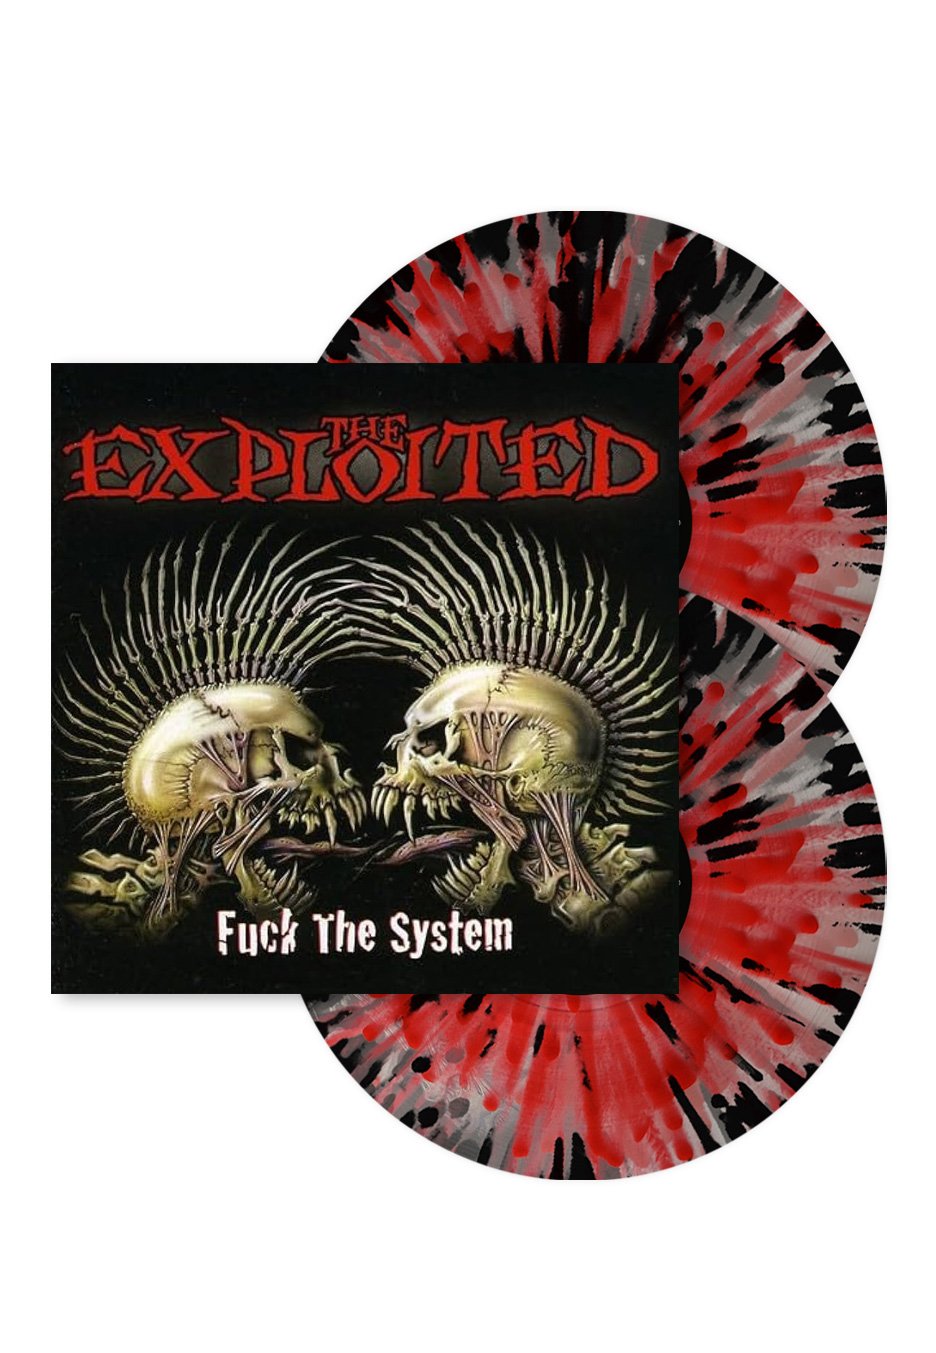 The Exploited - Fuck The System Transparent Red/Black Ltd. - Splatter 2 Vinyl